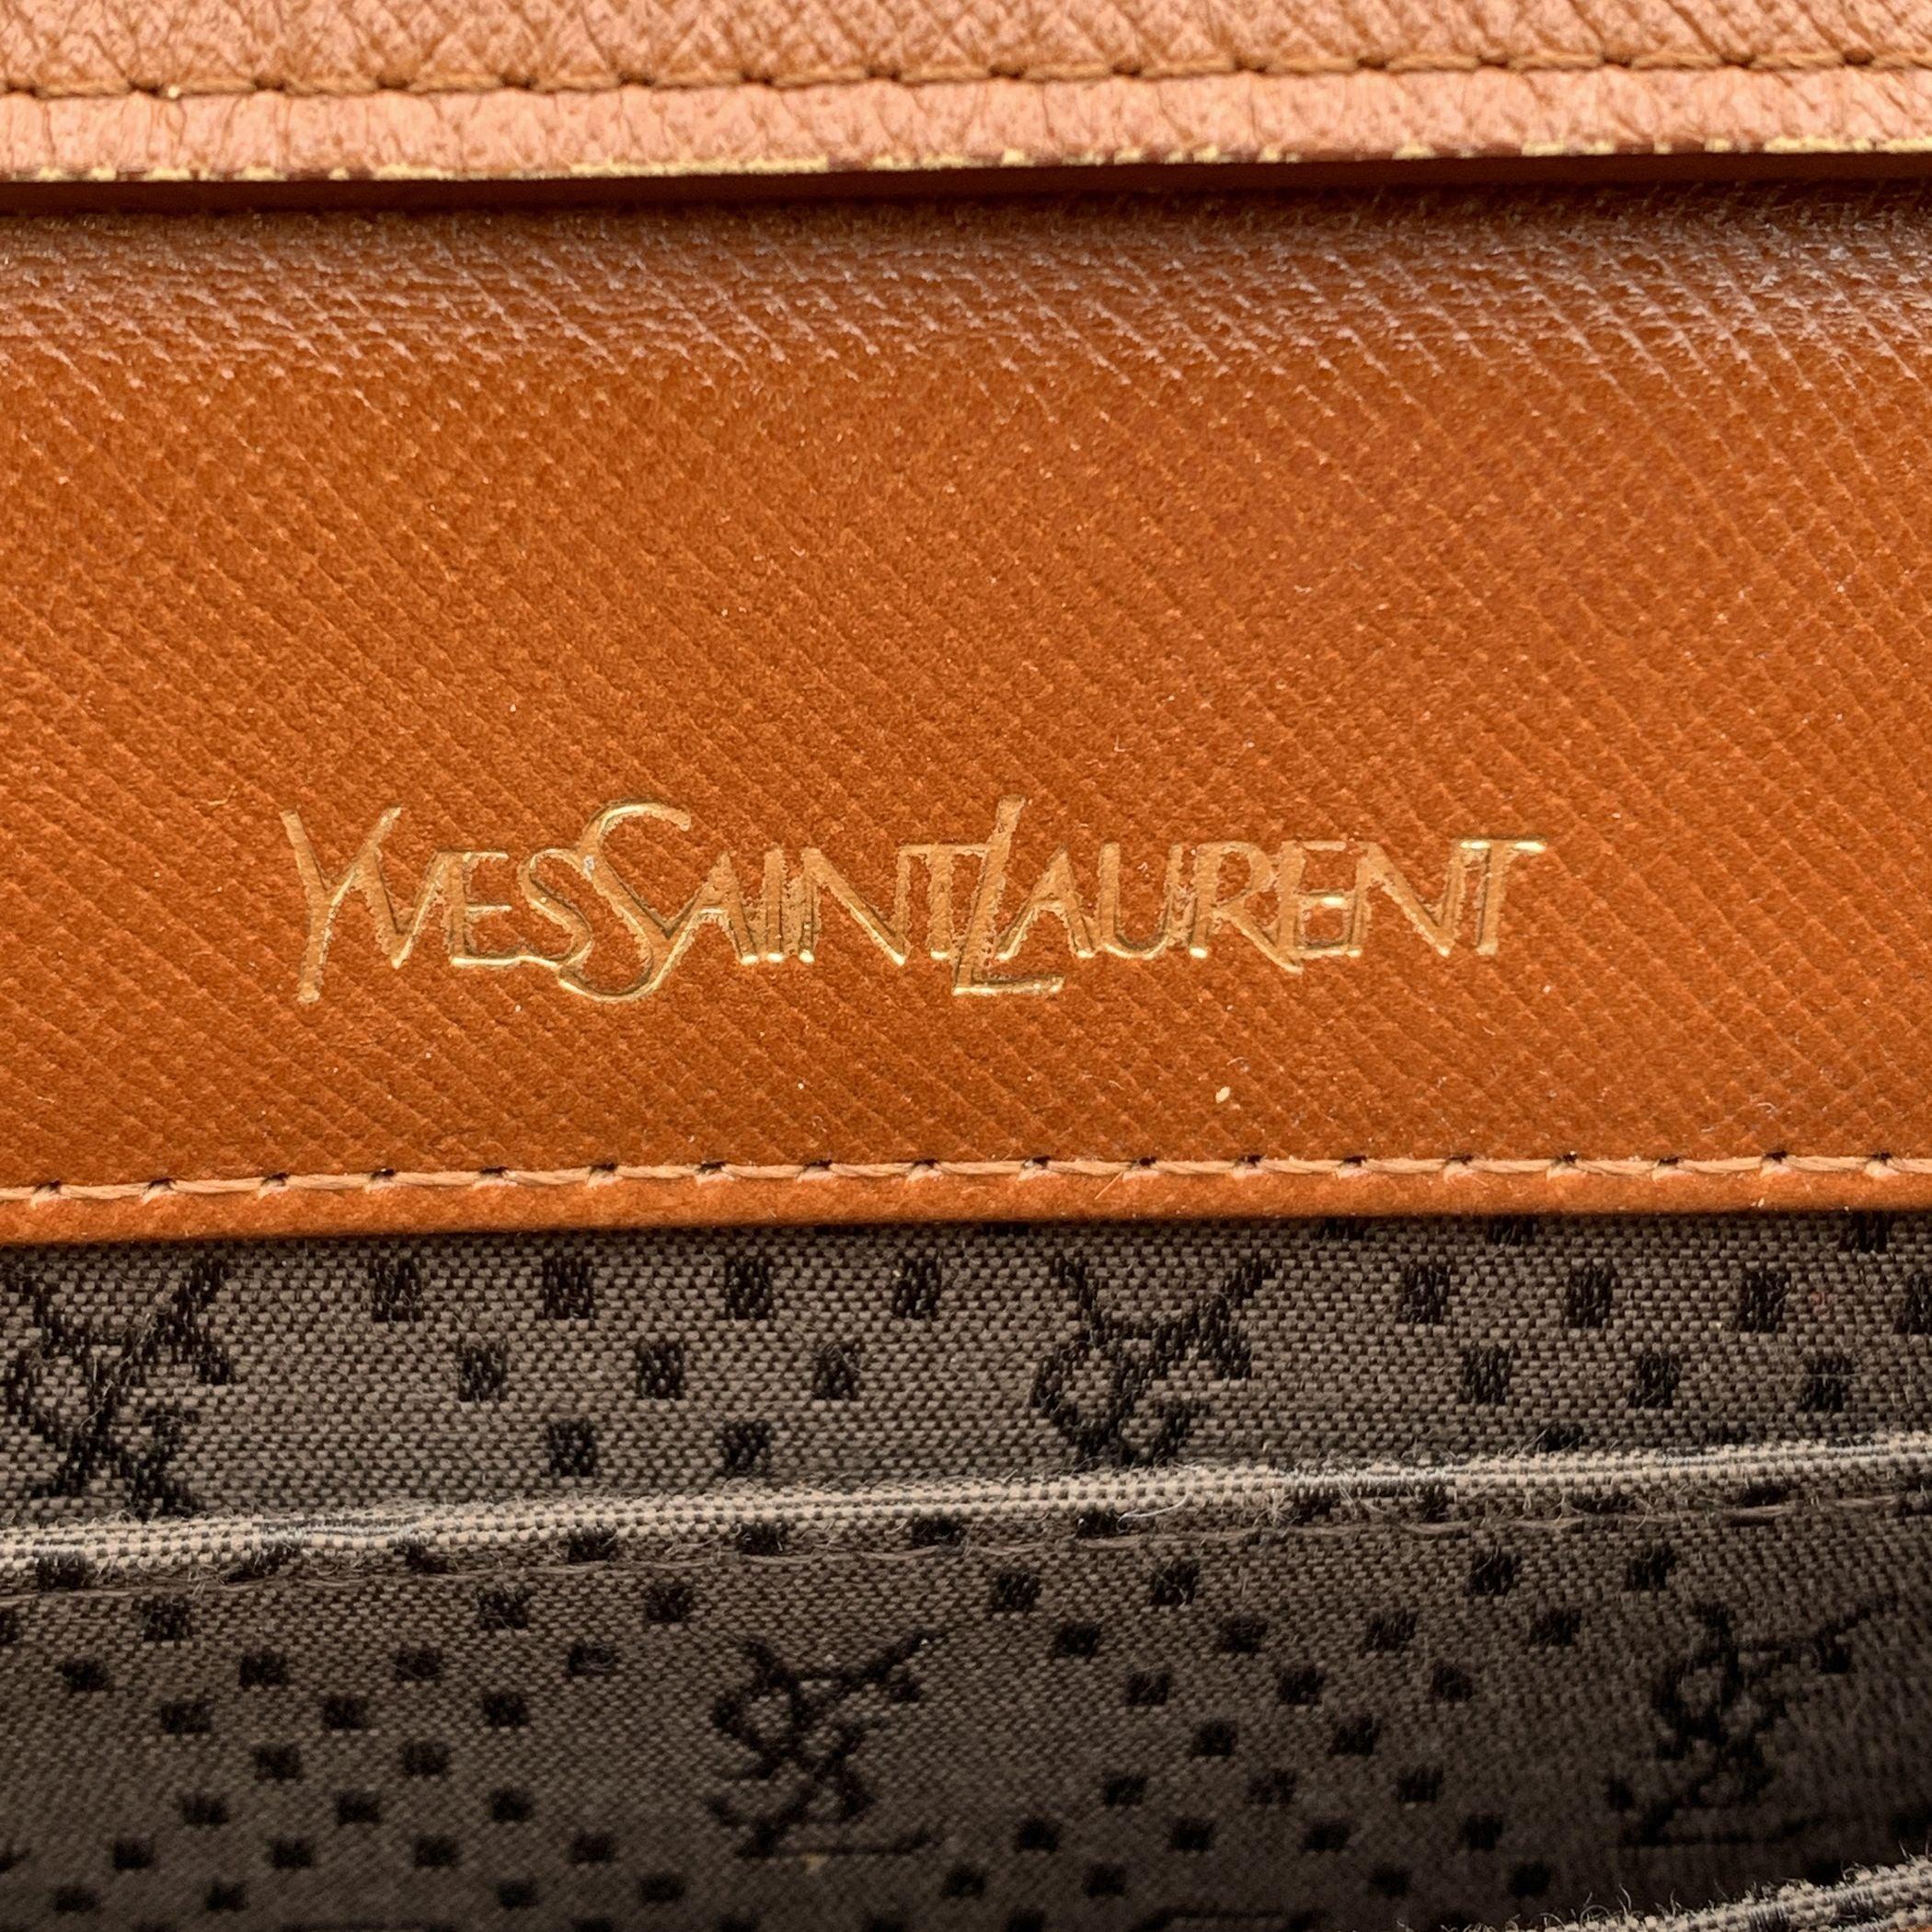 Yves Saint Laurent Vintage Tan Leather Studded Shoulder Bag 2